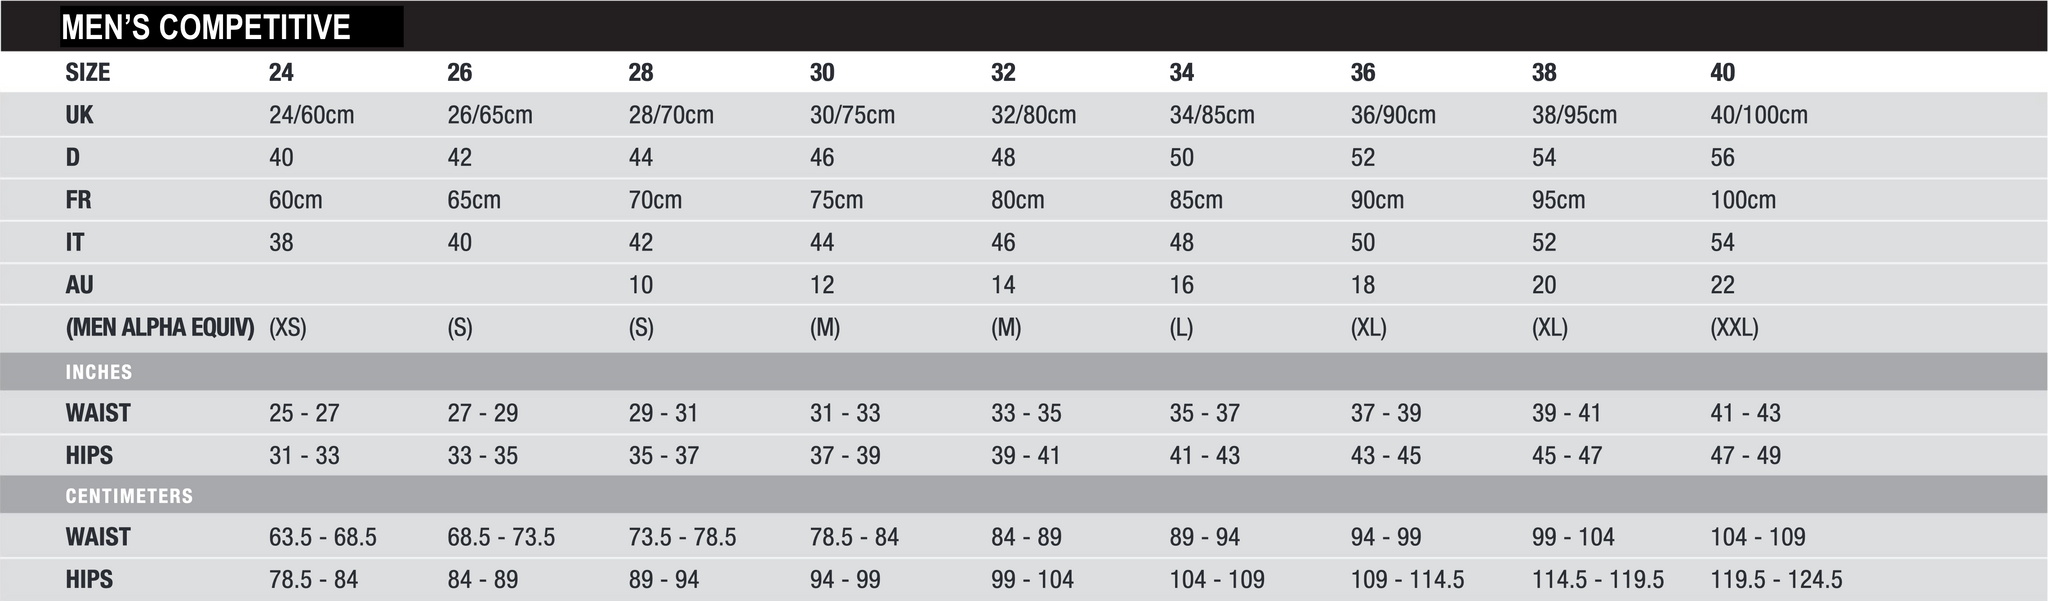 Male Nike Size Charts